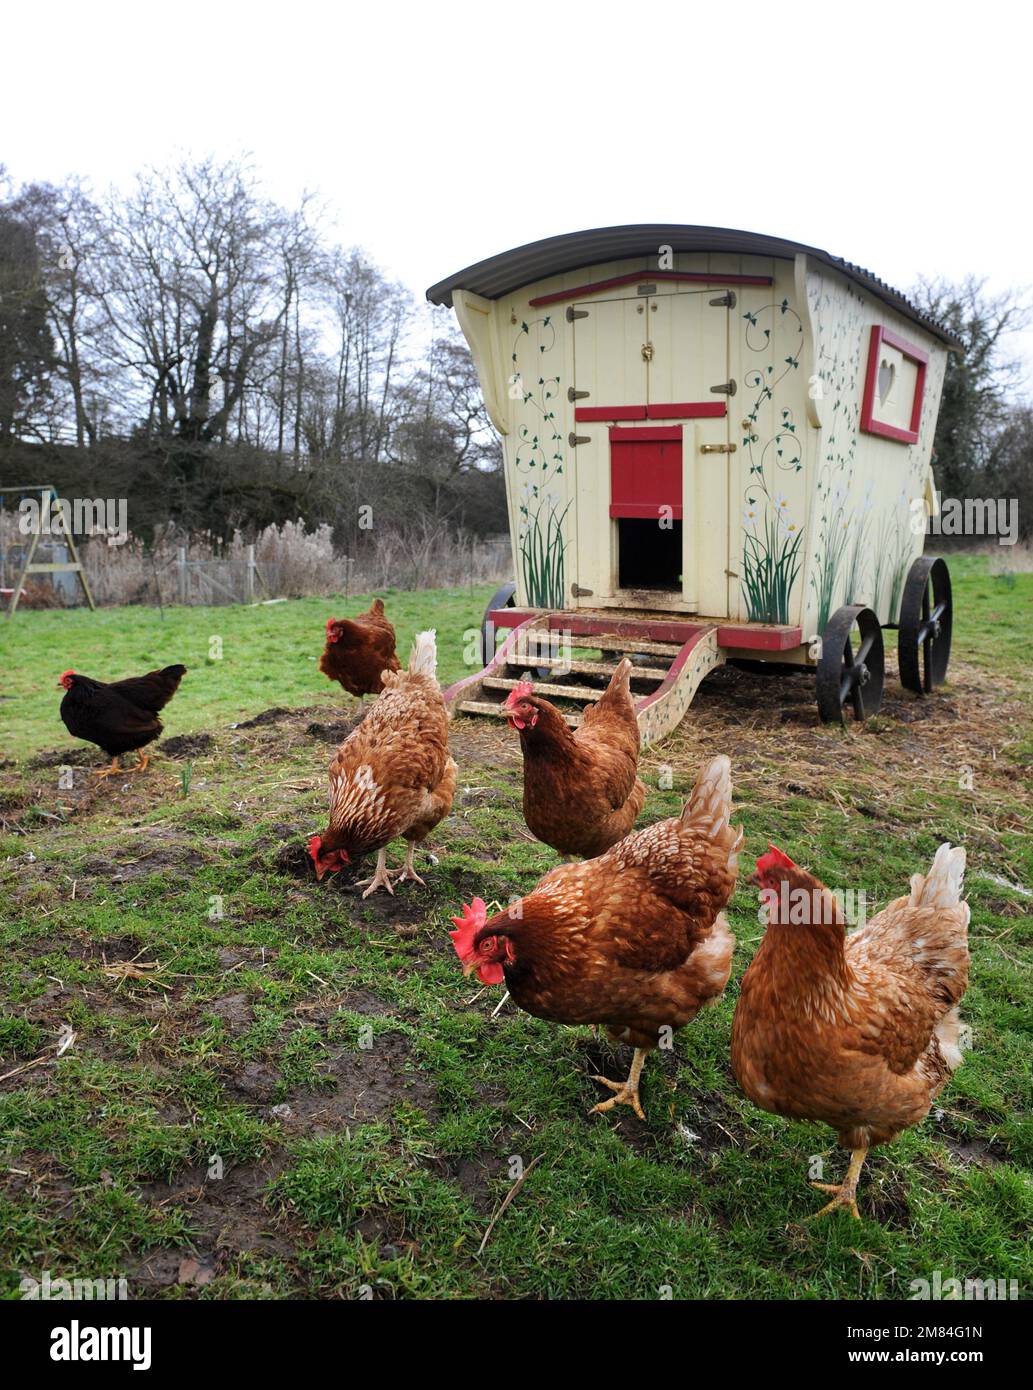 Poules de gamme libre avec une maison de poule de style mobil-home gitan. Banque D'Images